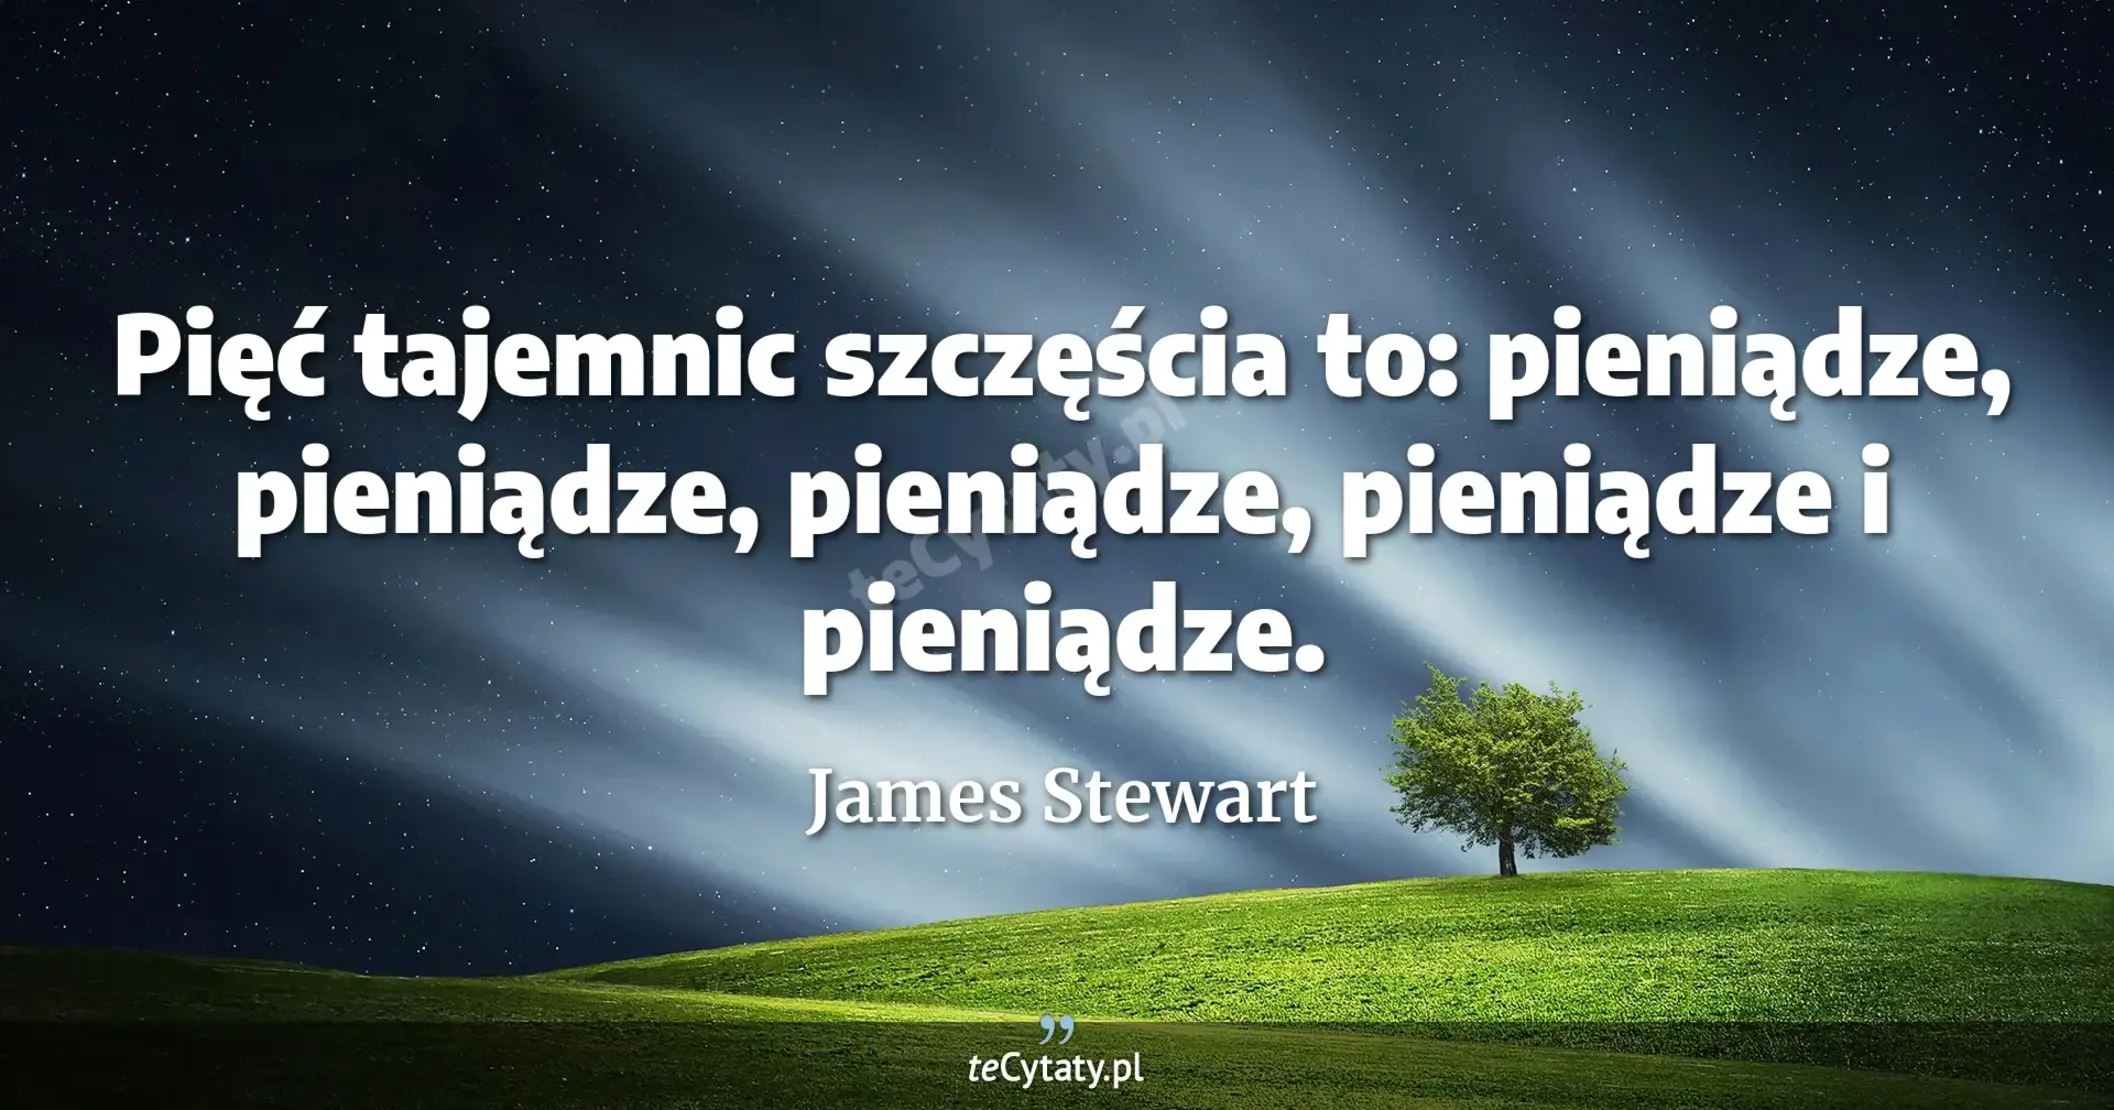 Pięć tajemnic szczęścia to: pieniądze, pieniądze, pieniądze, pieniądze i pieniądze. - James Stewart